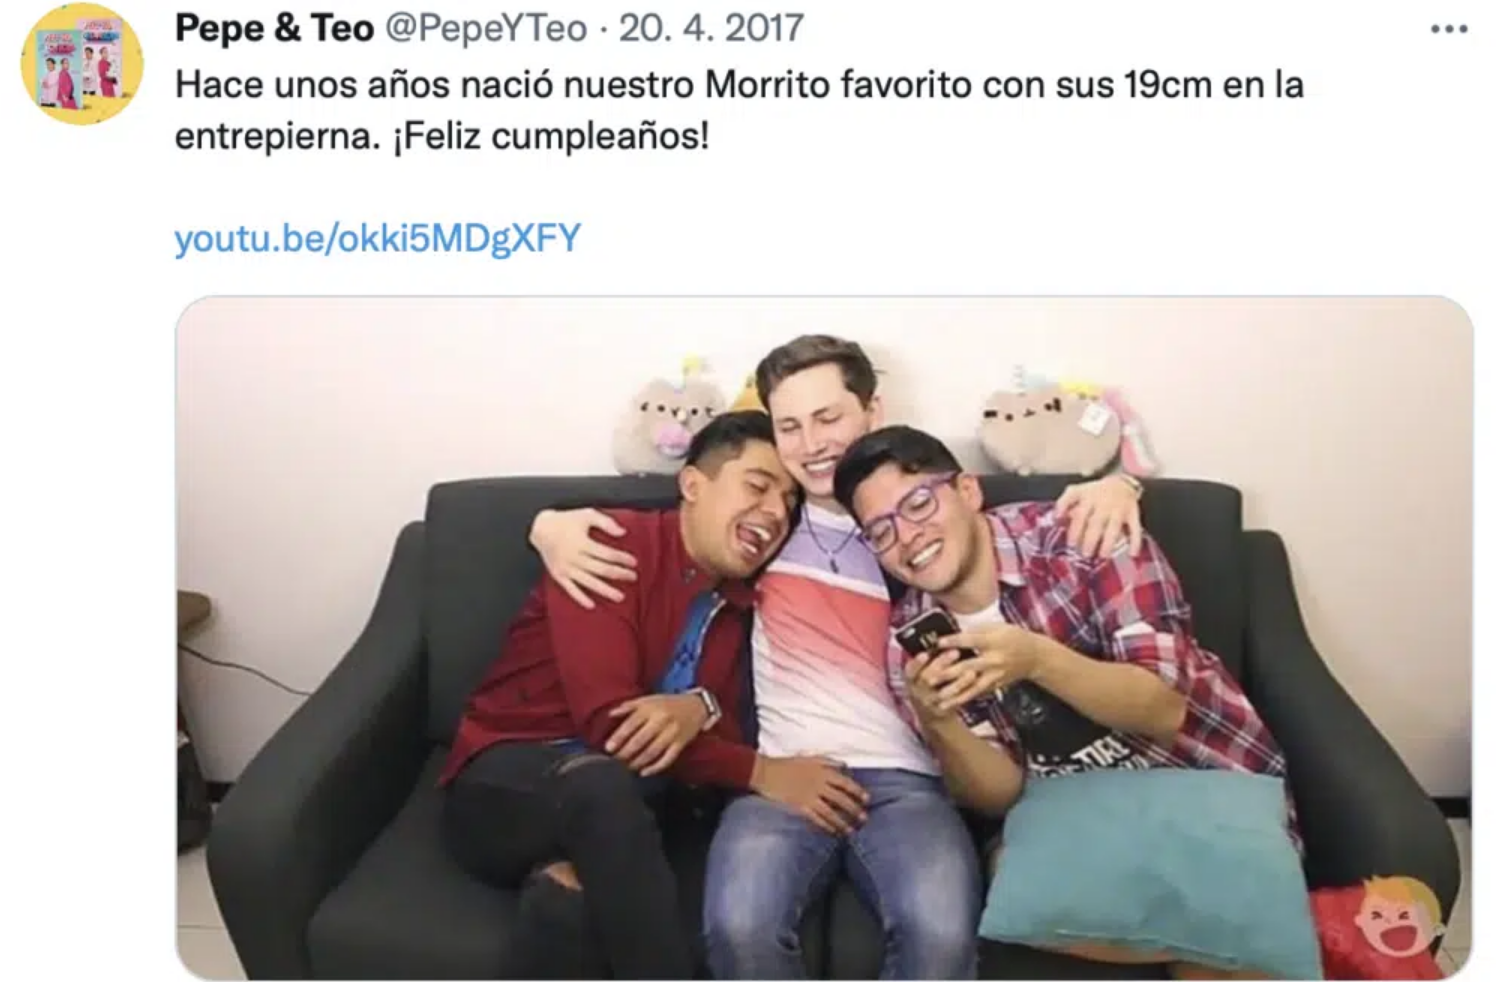 "Me sentí humillado": Acusan a los youtubers 'Pepe y Teo' de acoso sexual 